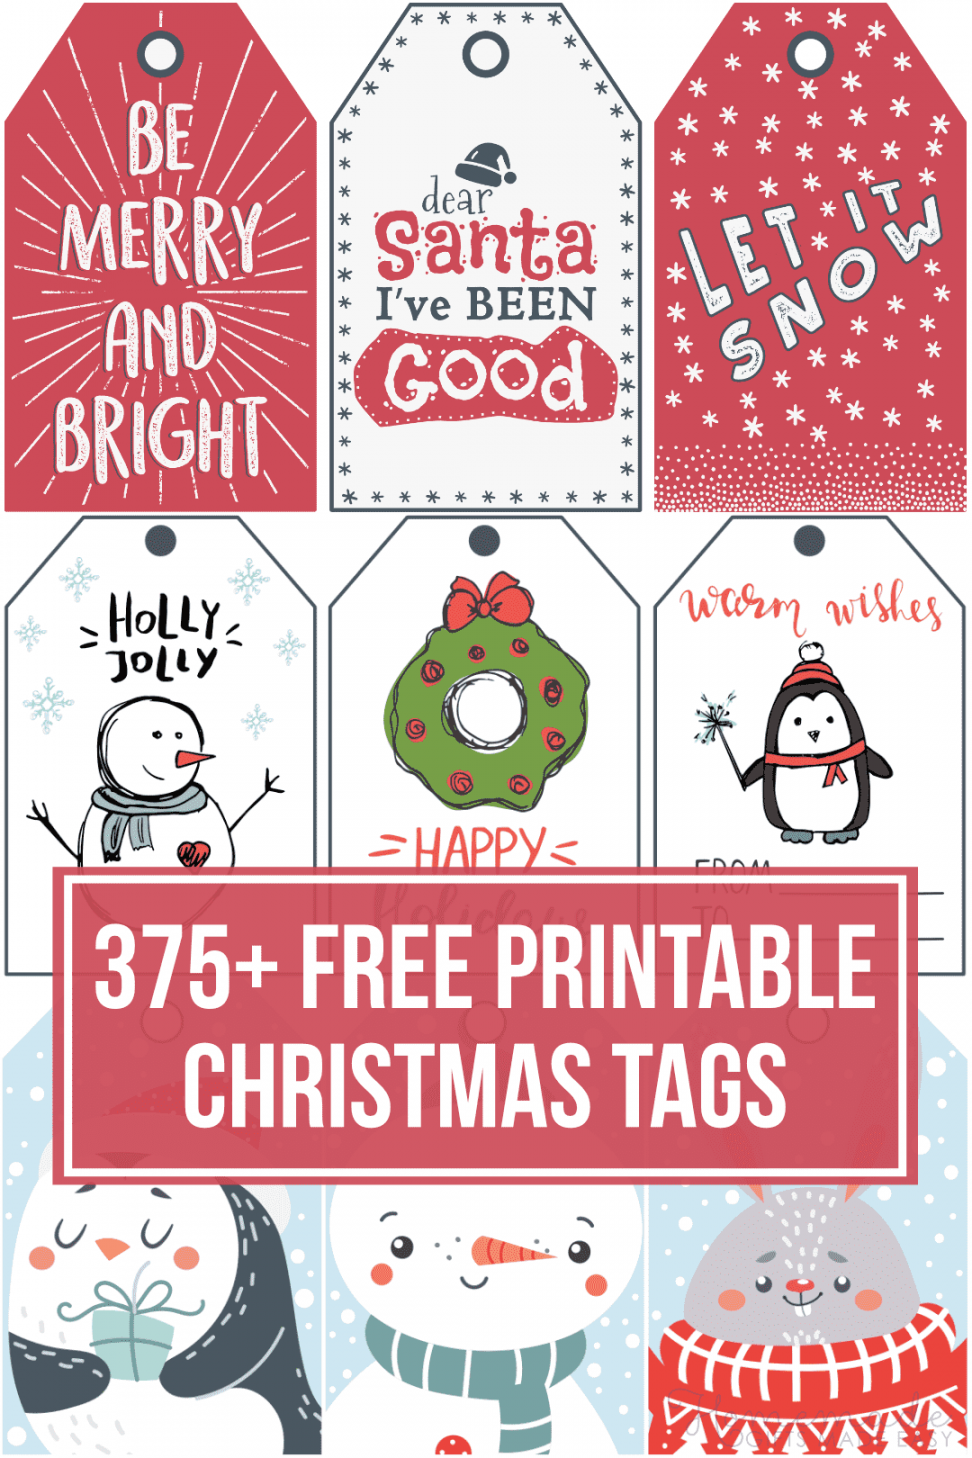 Free Printable Christmas Gift Tags - Printable - + Free Printable Christmas Tags for your Holiday Gifts